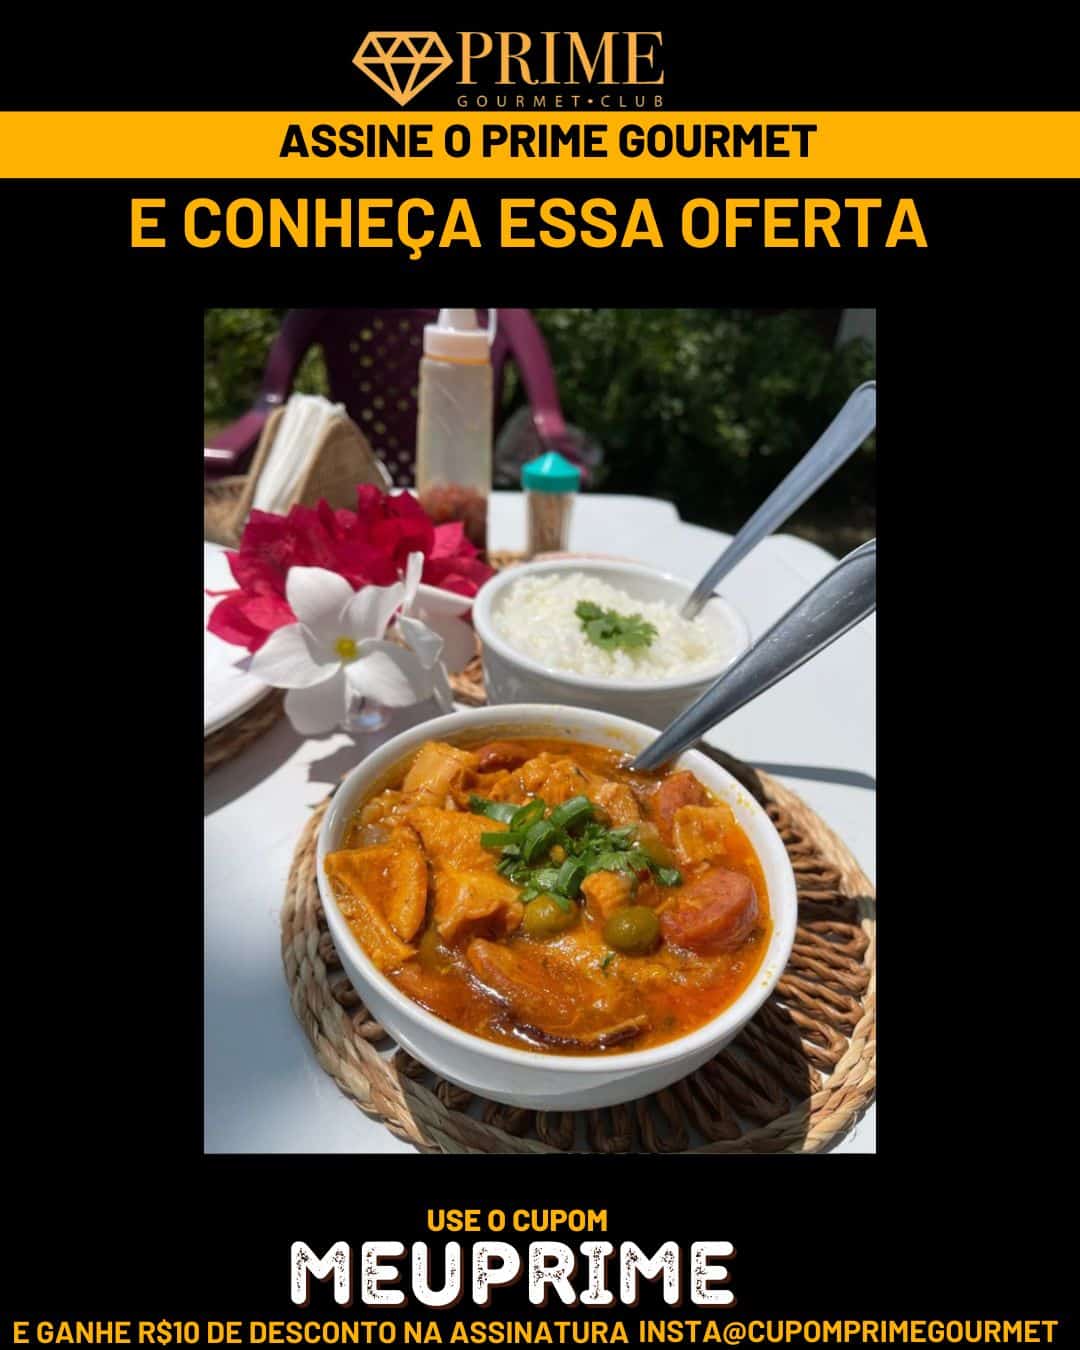 Prime Gourmet Maranhão e Região - Sitio Paraiso do Caju